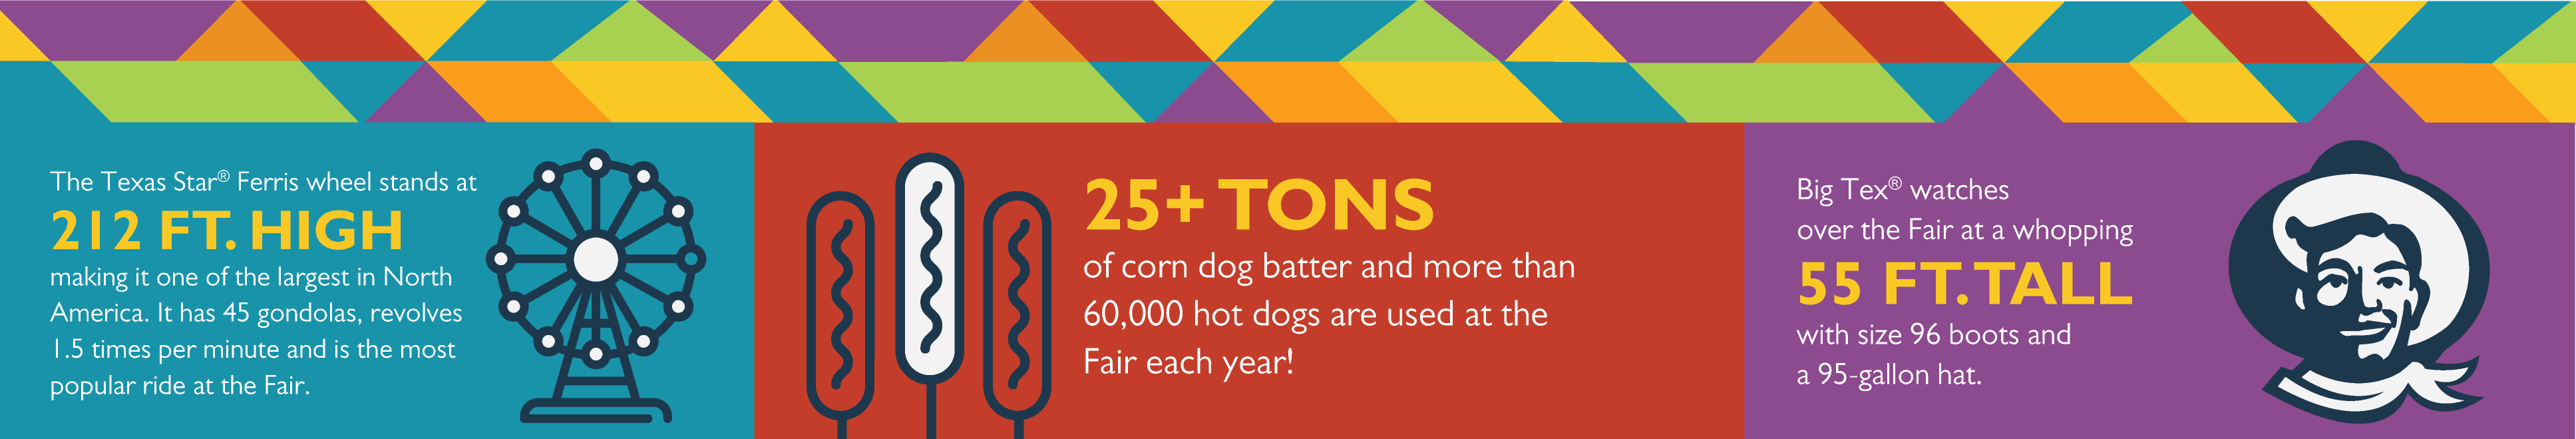 State Fair Fun Facts